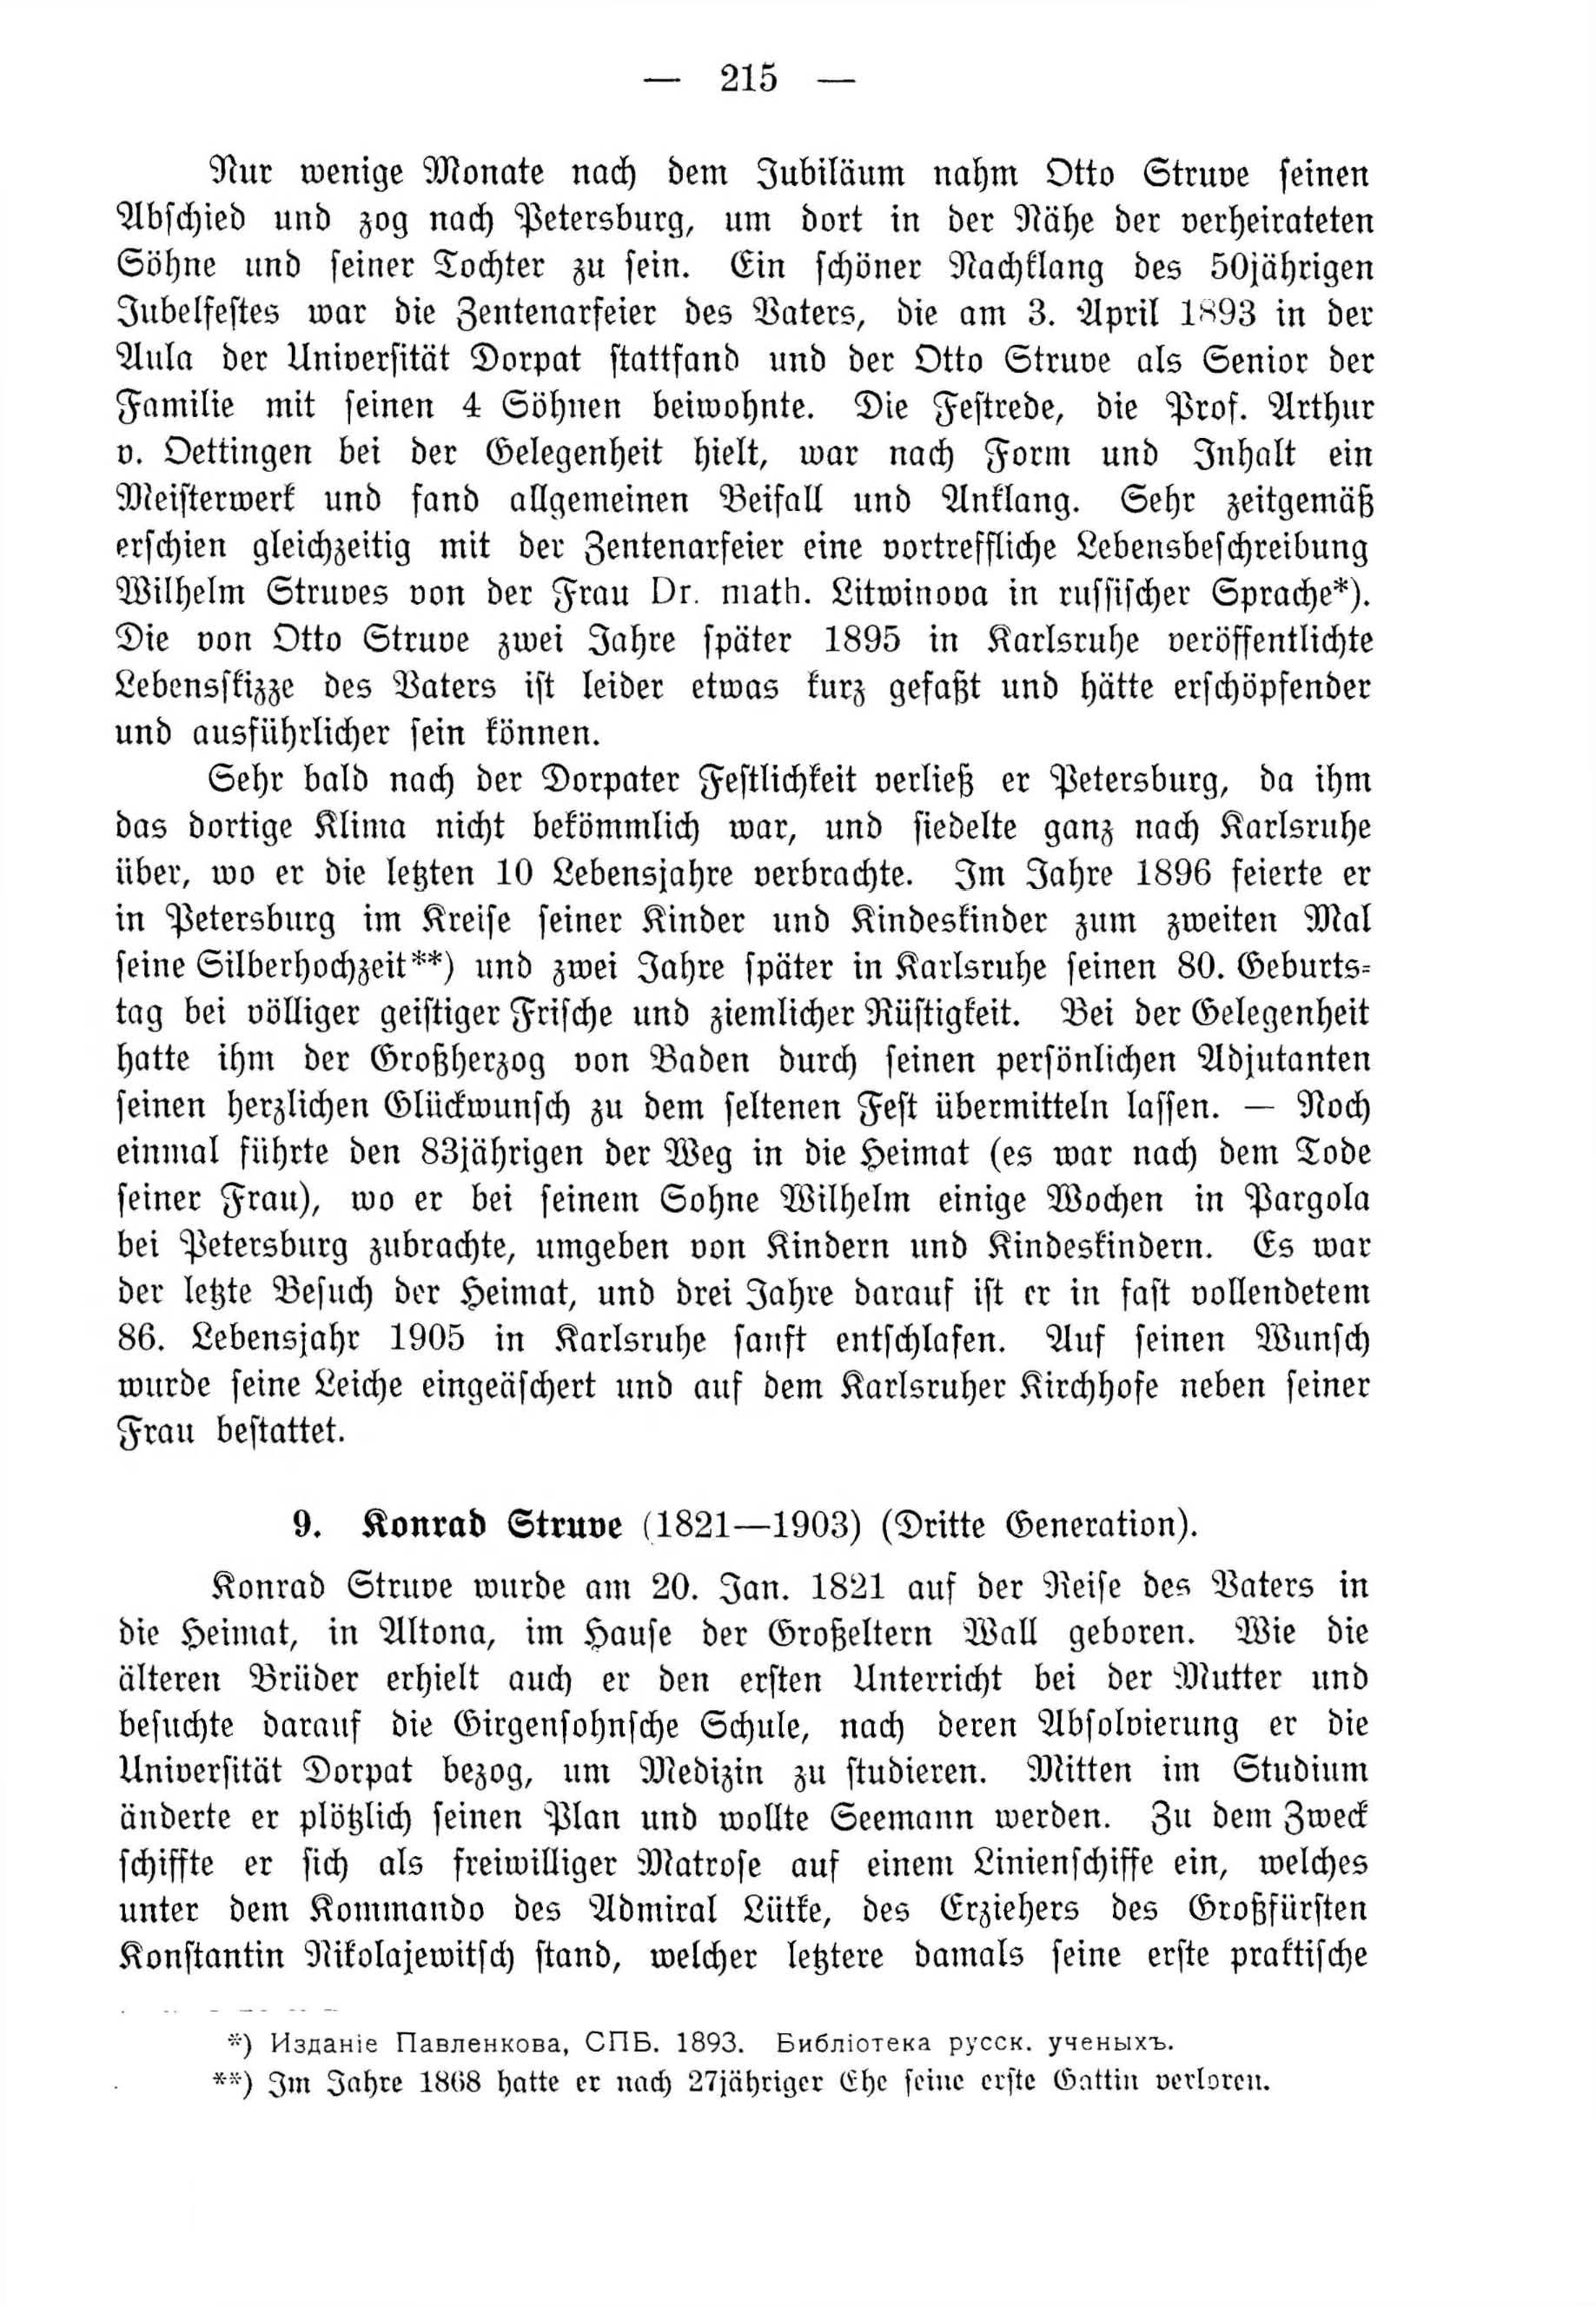 Deutsche Monatsschrift für Russland [4] (1915) | 215. (215) Main body of text